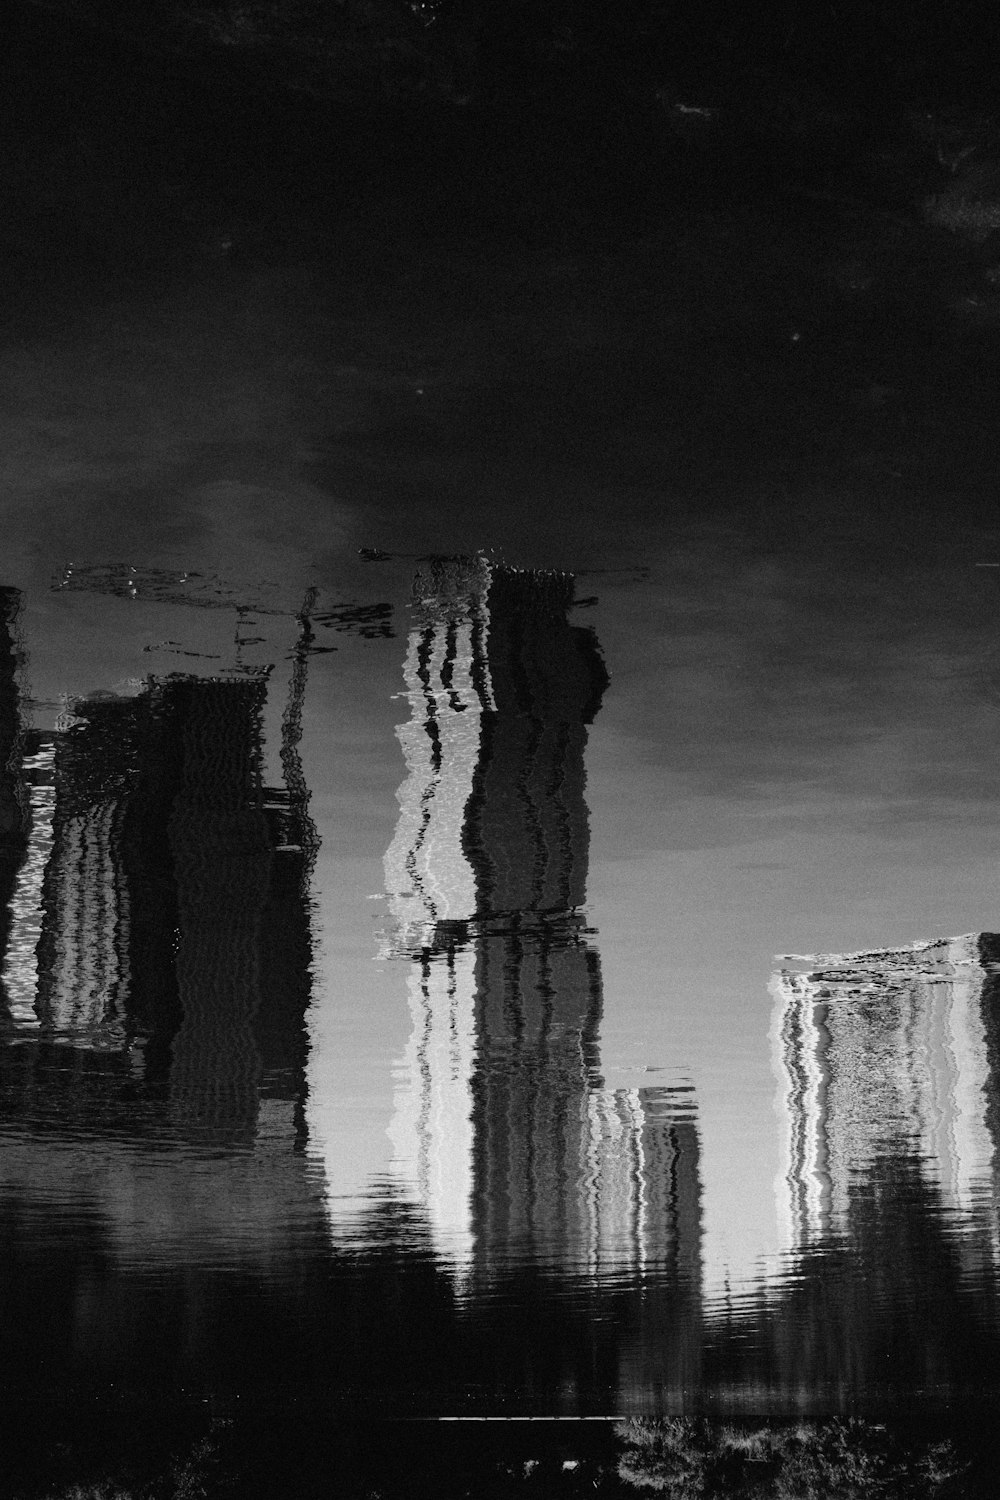 foto in scala di grigi del riflesso degli edifici nell'acqua